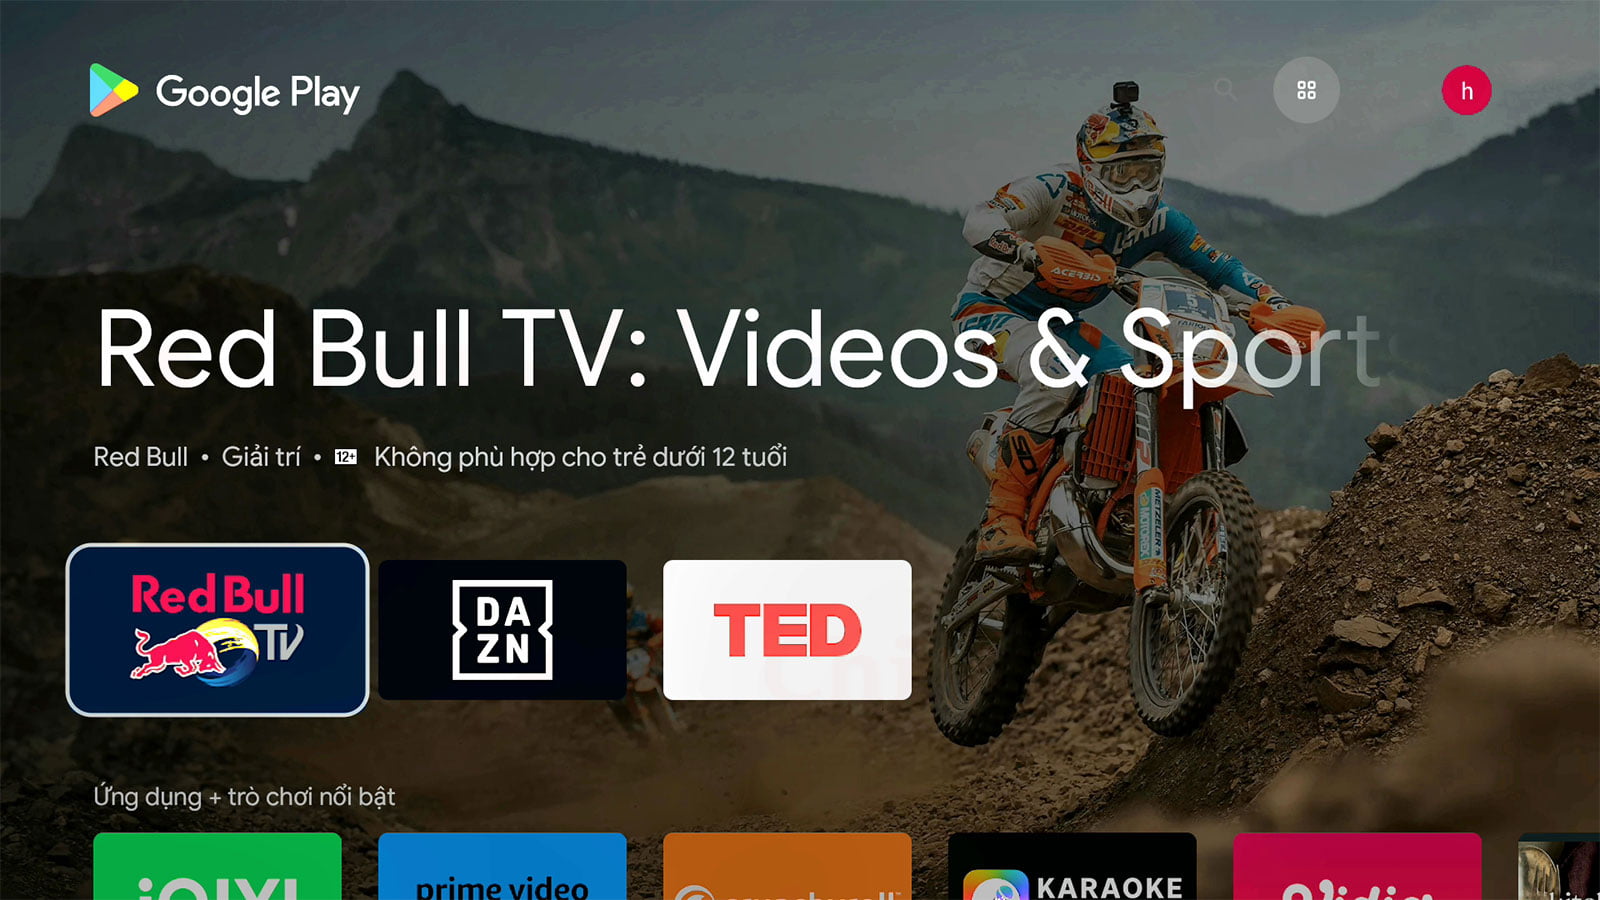 Đánh giá Đầu Dune HD Real Vision 4K Duo | Dune-HD Vietnam